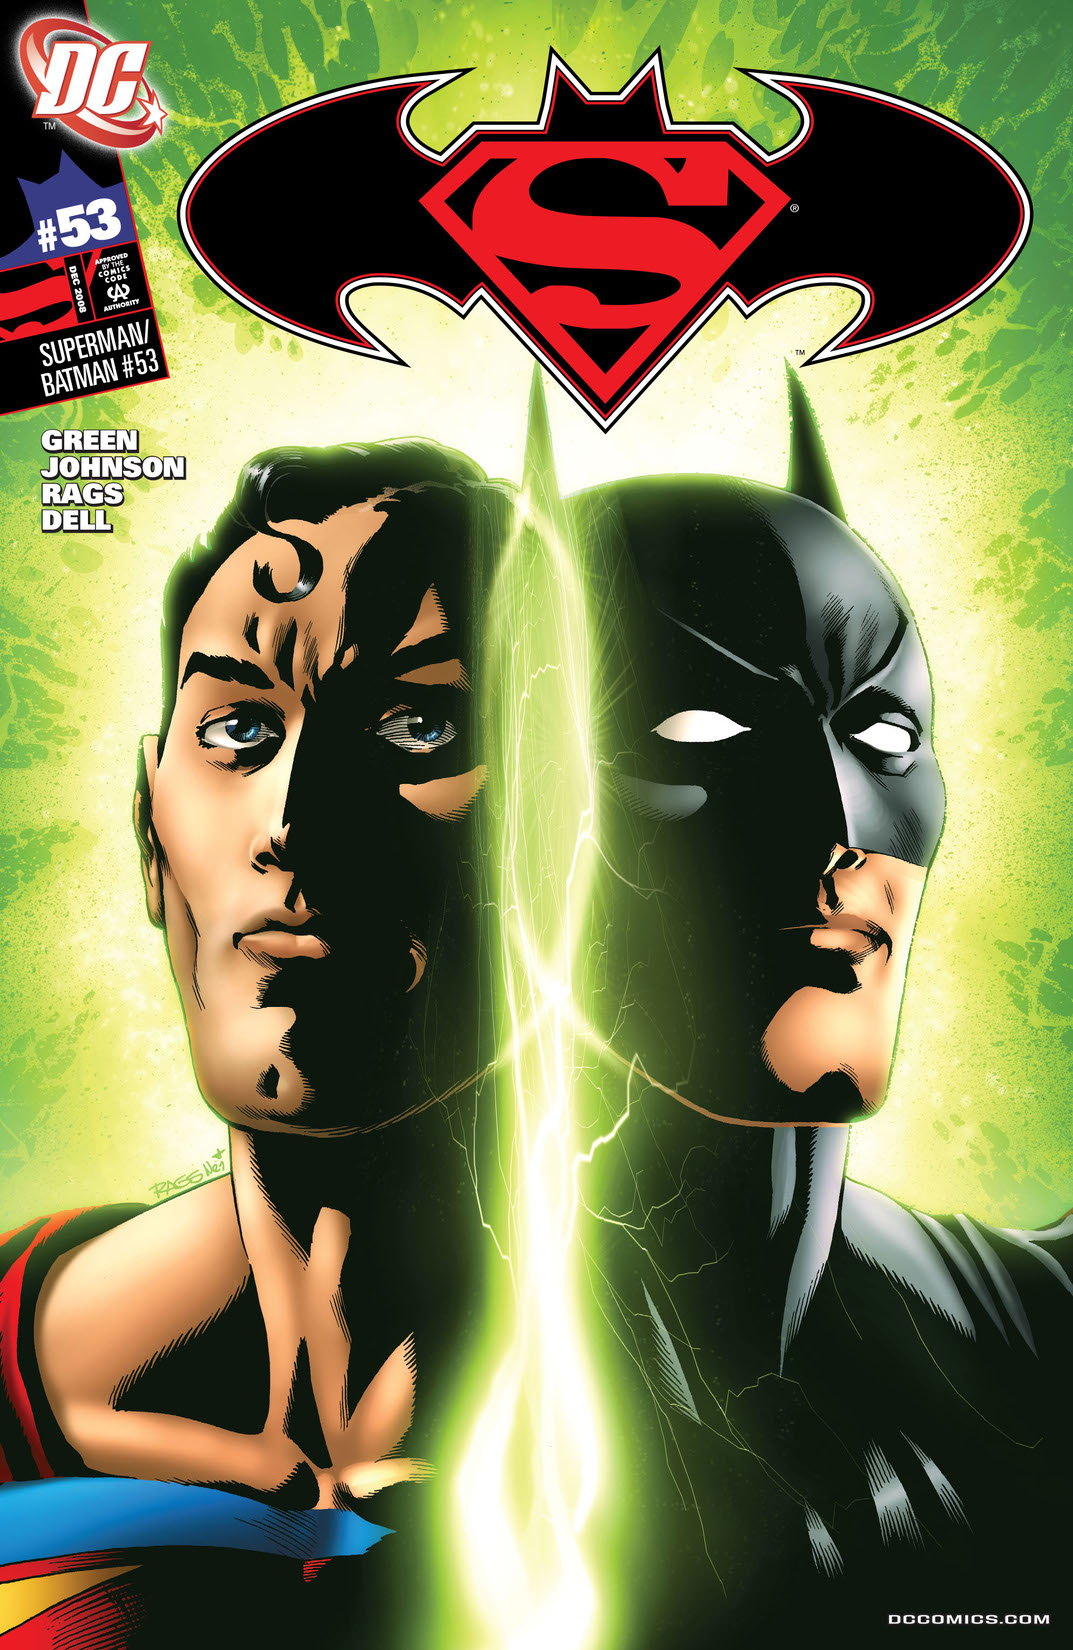 Superman/Batman #53 preview images